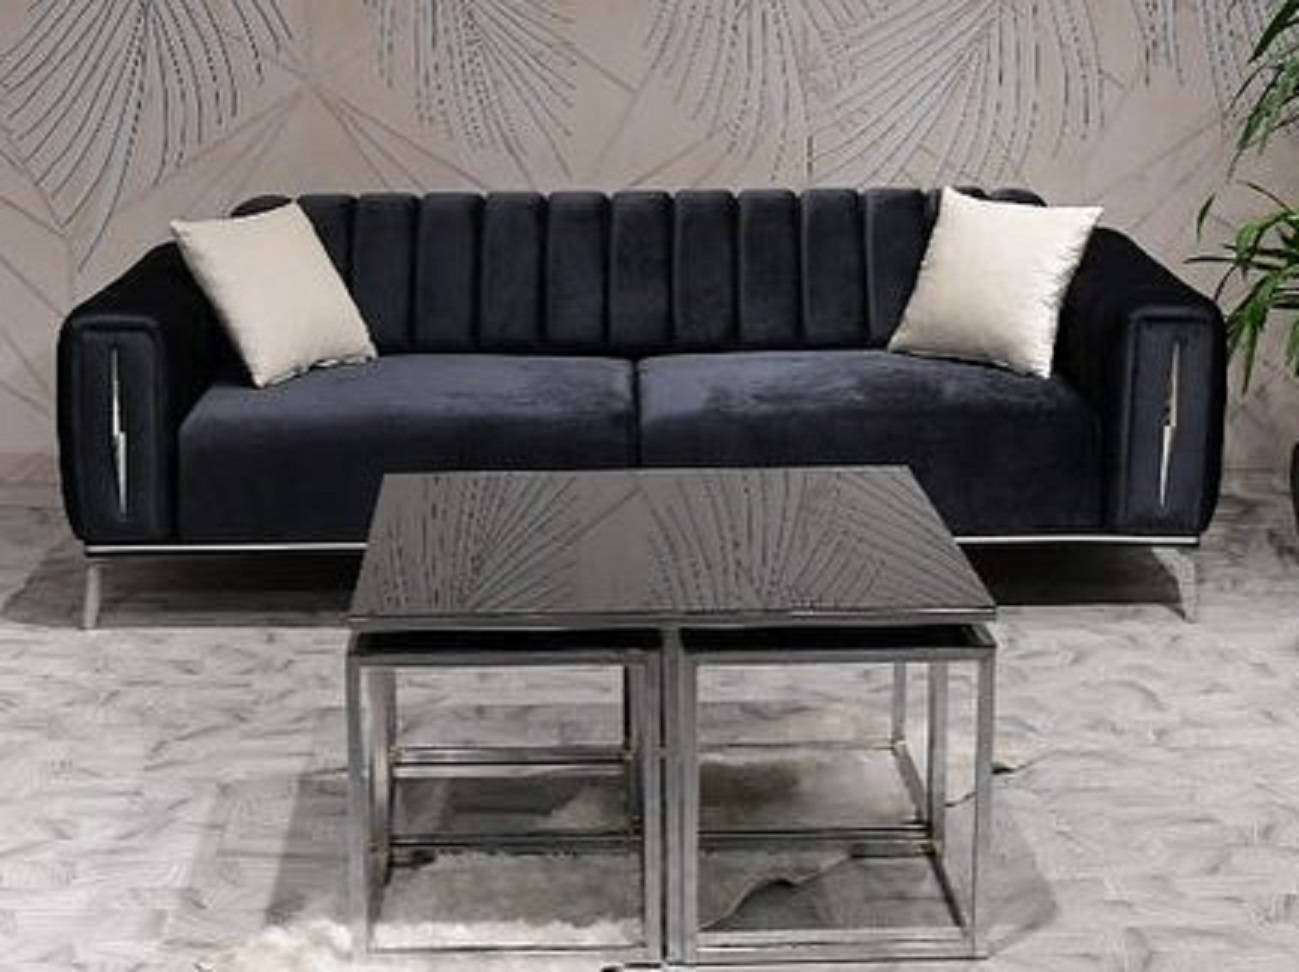 Safir Metalic Sofa with Bed Metal Leg